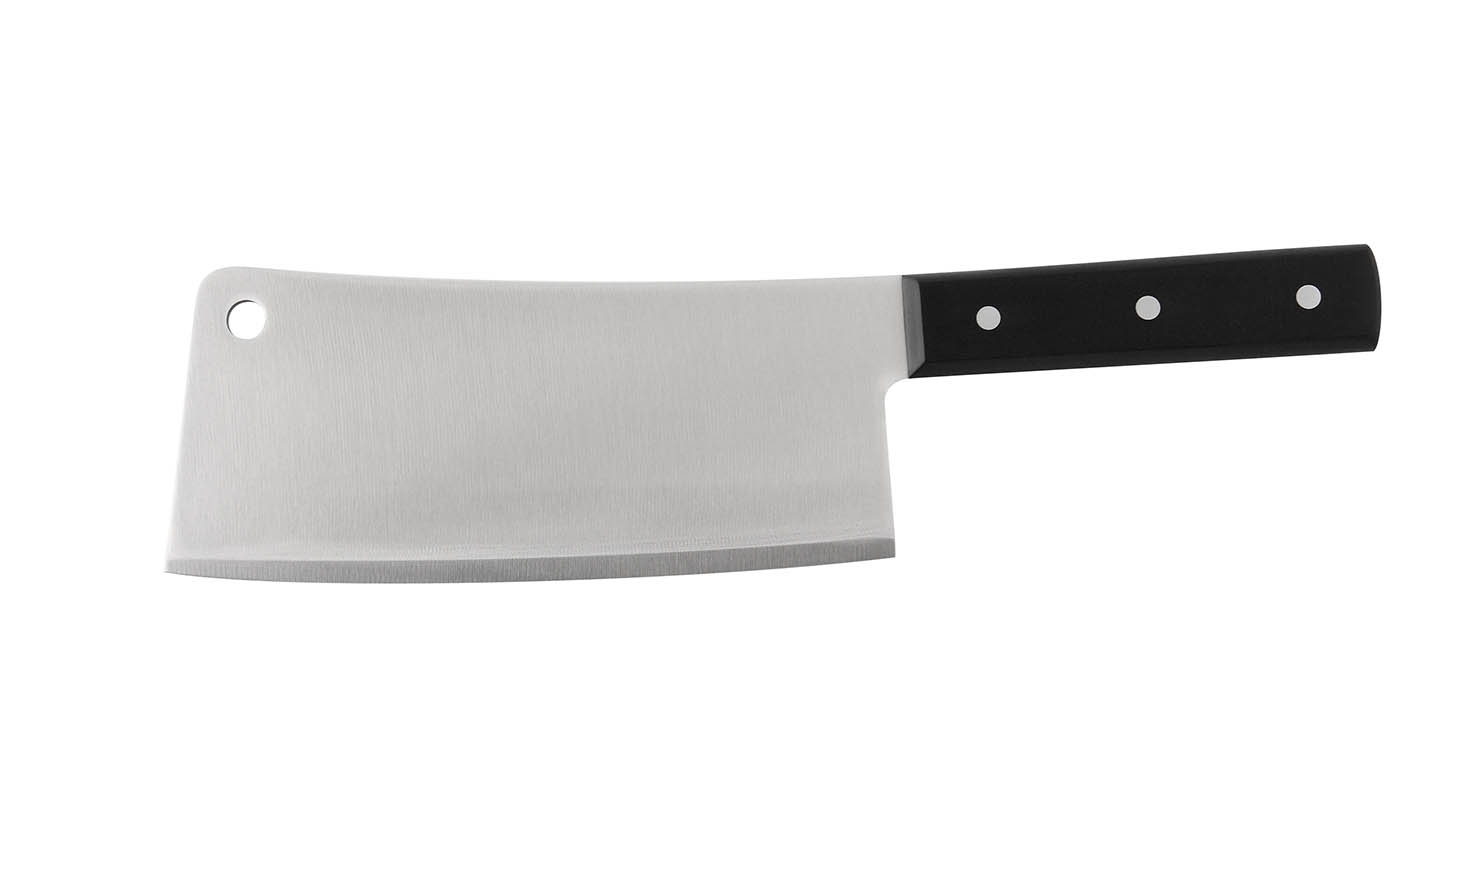 Los cuchillos: tipos, usos y cuidados